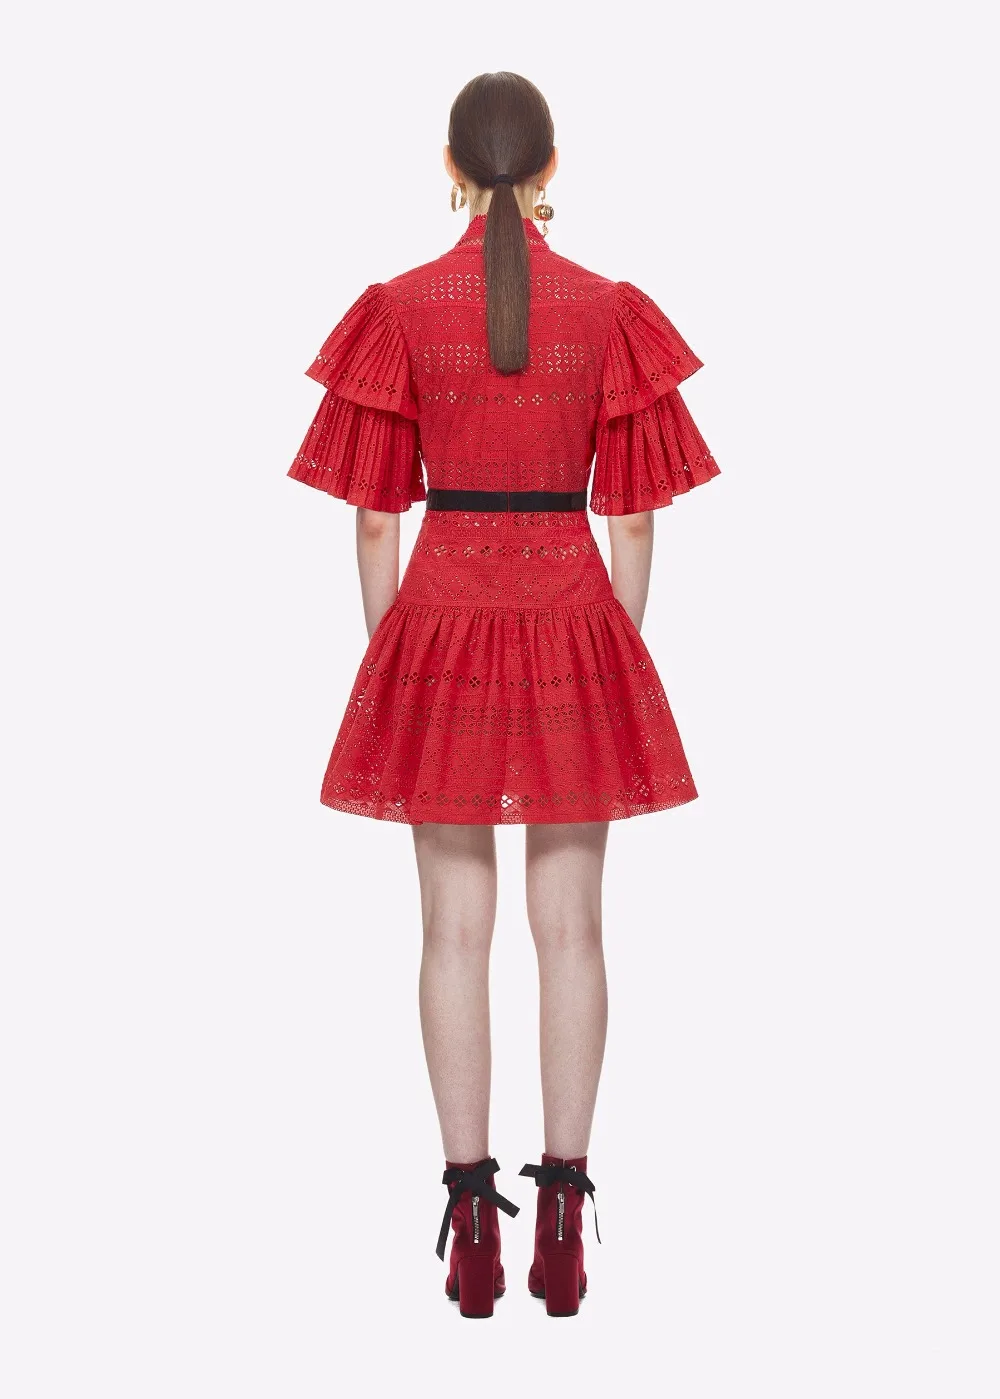 Модельное платье JSXDHK для автопортрета 2022 летнее красное хлопковое лоскутное